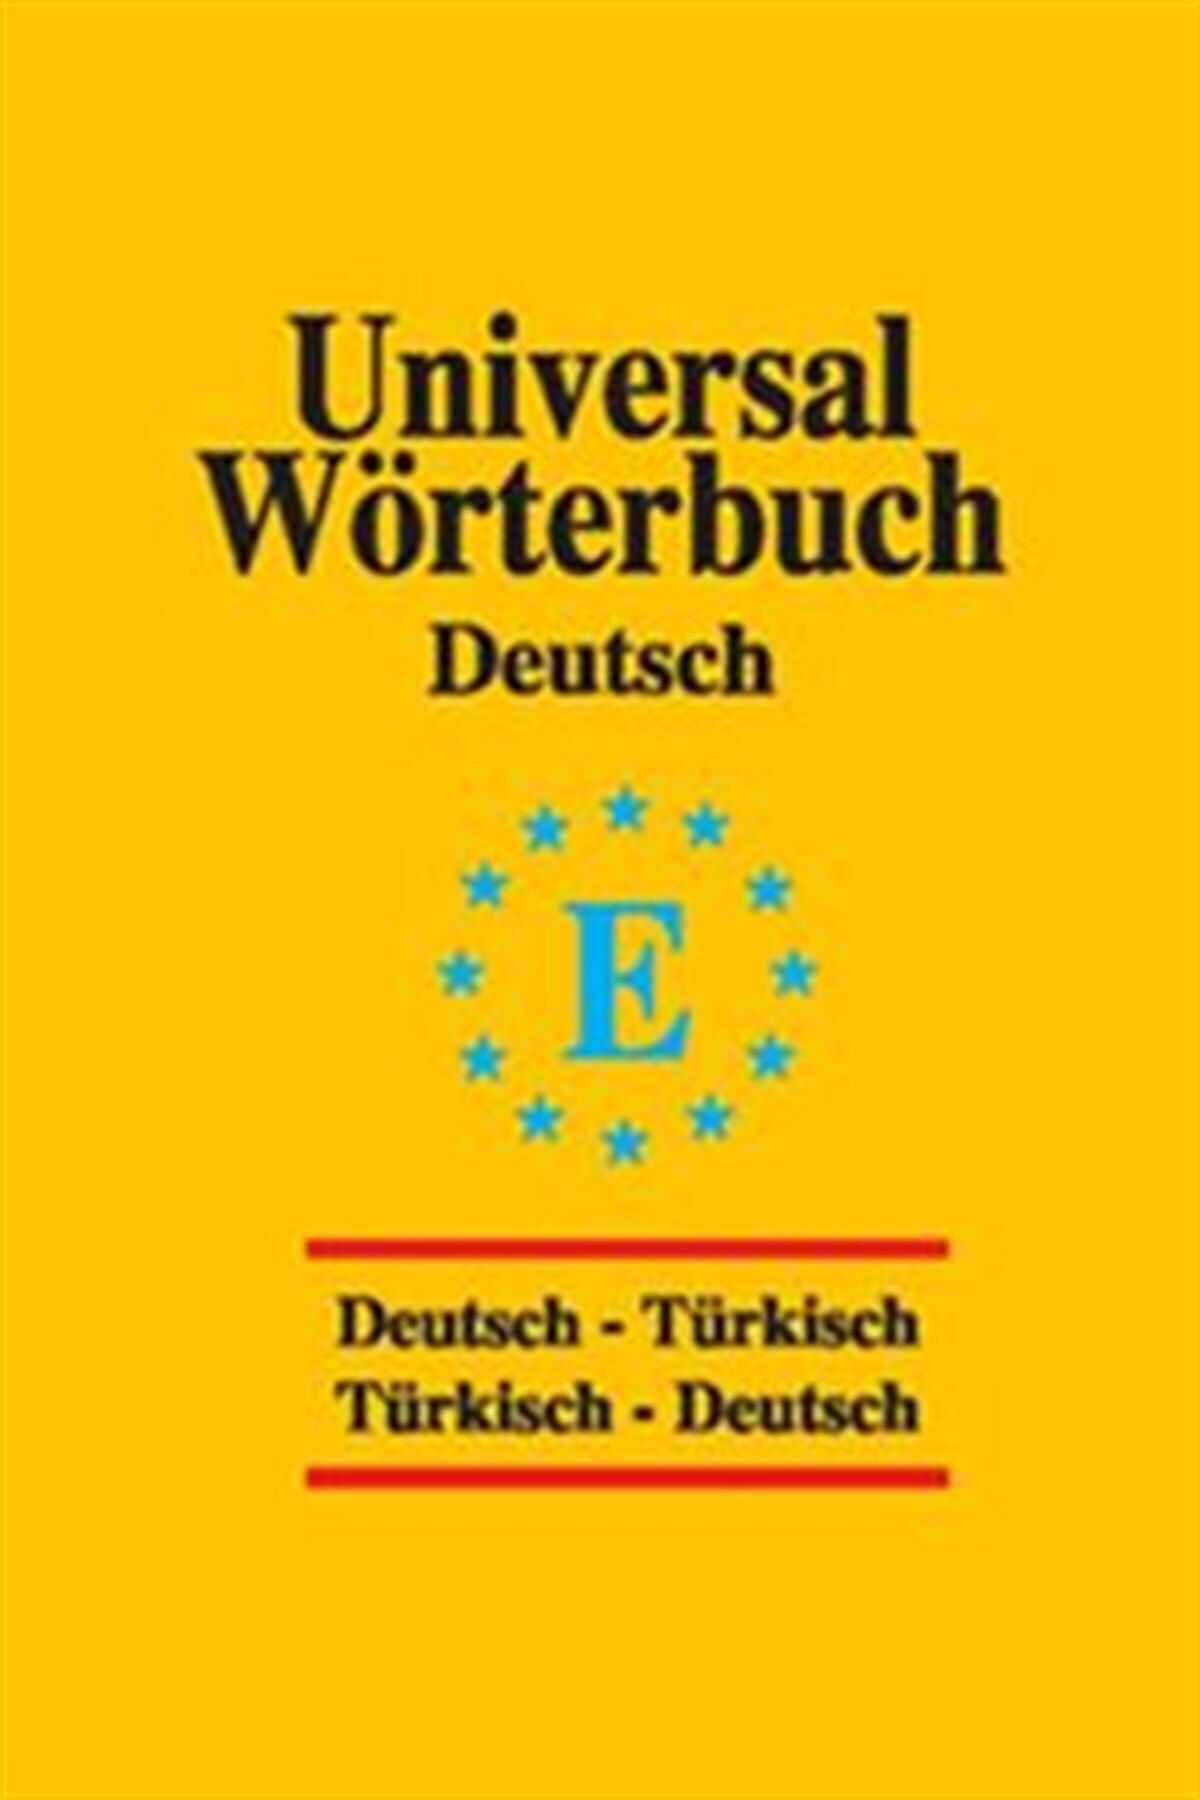 Omega Universal Wörterbuch Deutsch - Türkisch / Türkisch - Deutsch